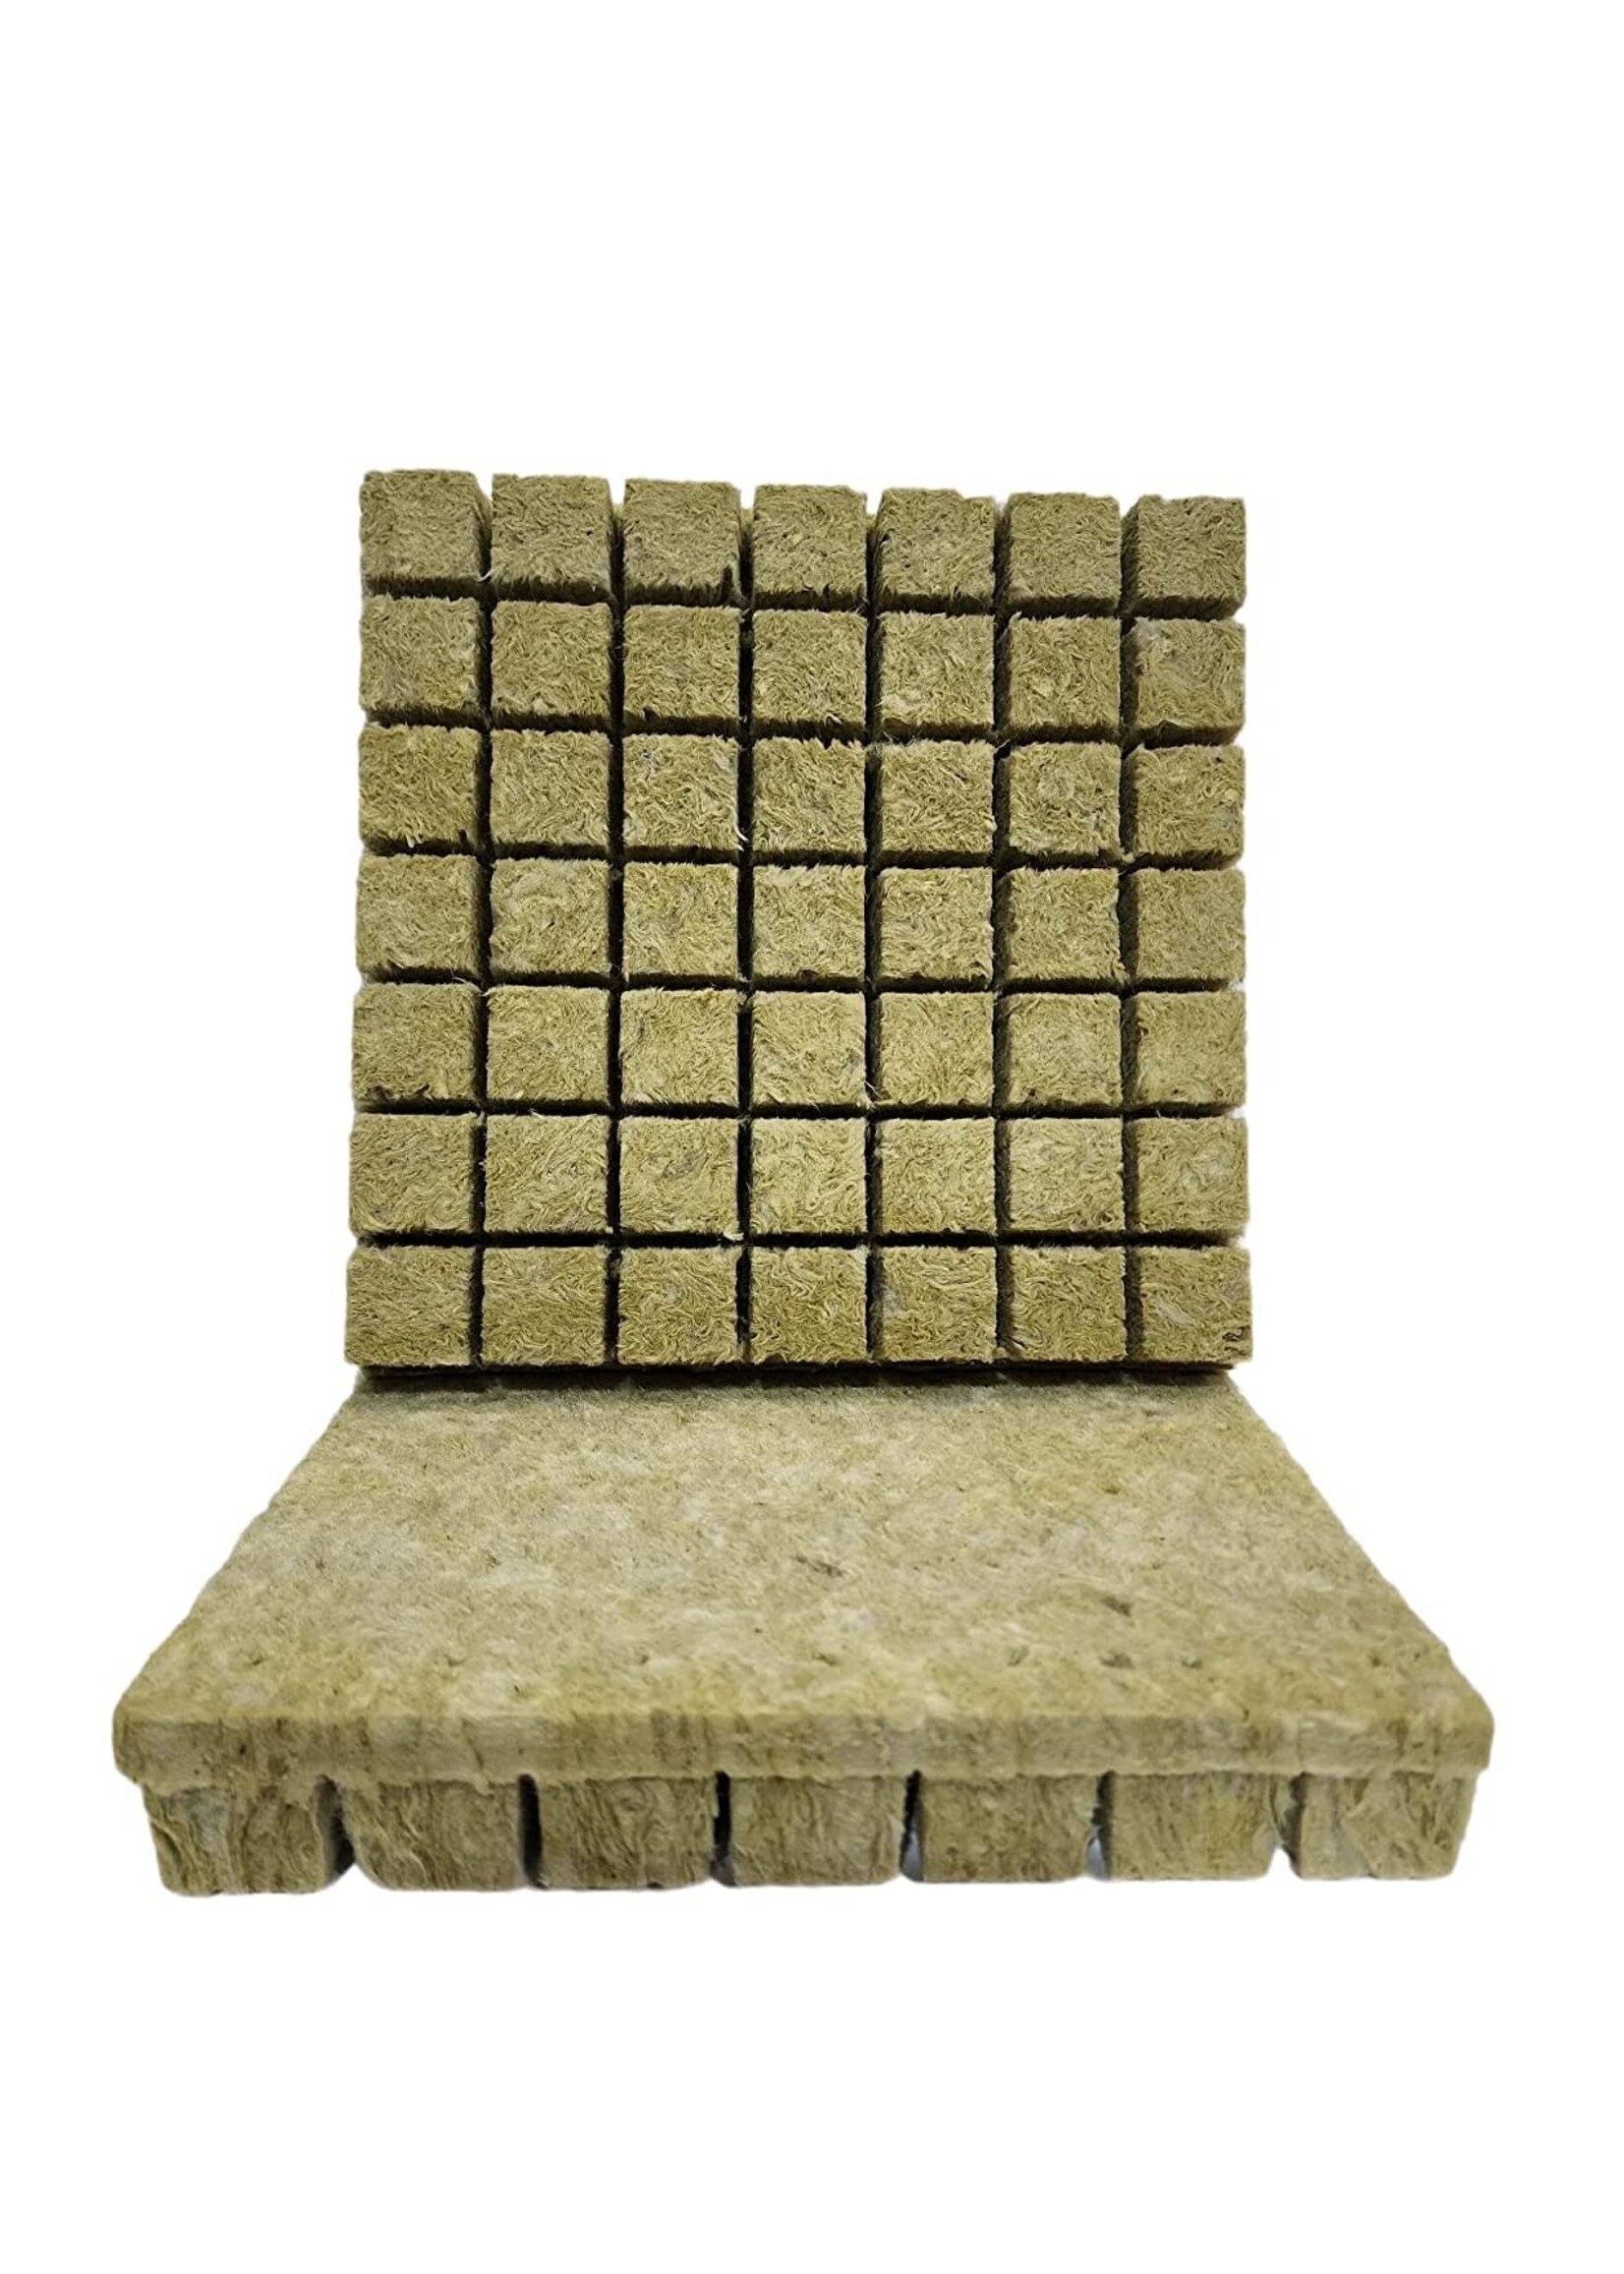 Grodan GRODAN Rockwool Grow Plugs 1.5" x 1.5" - 98 Pcs Hydroponic Mineral Rockwool Starter Cubes